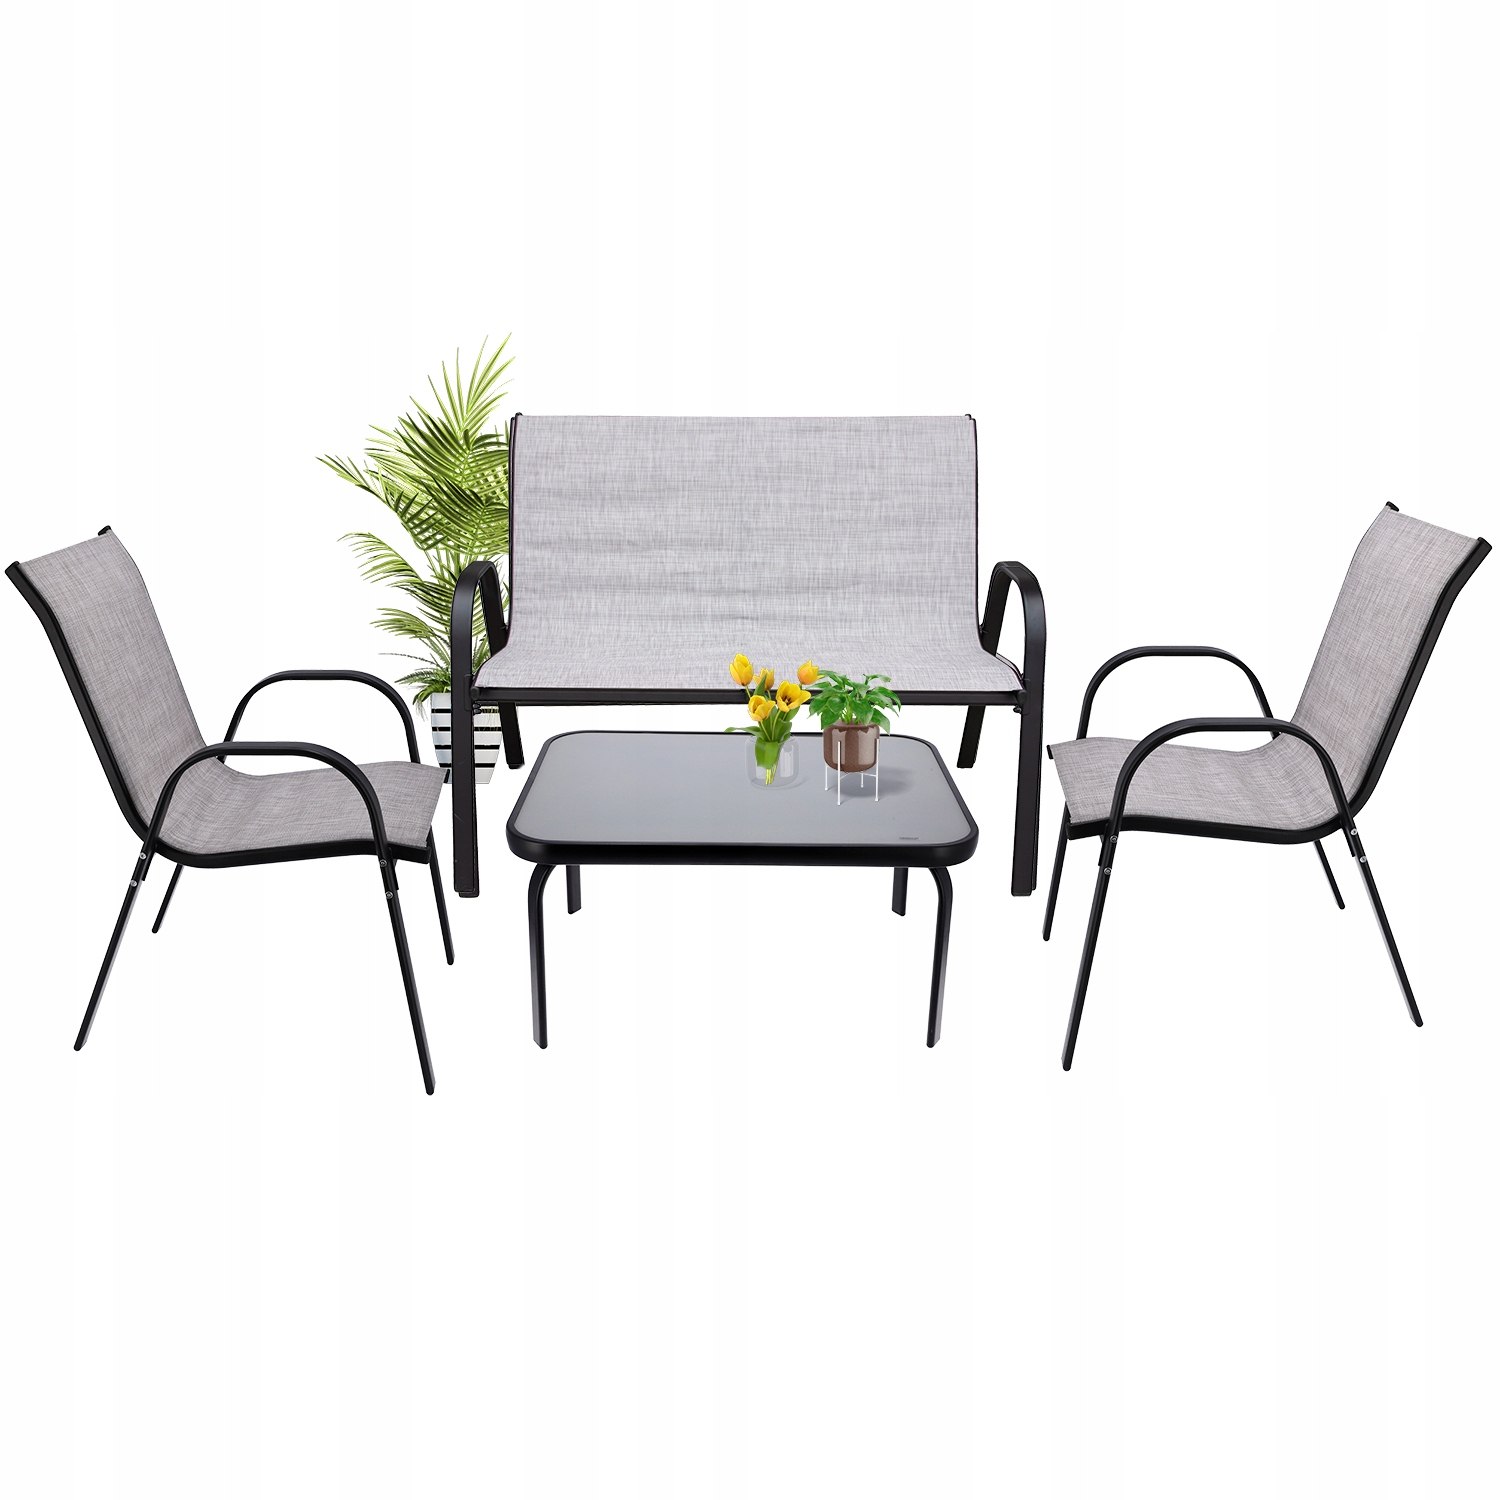 MEBLE OGRODOWE taras zestaw komplet stół krzesł, , OM-968059.5900410968059,